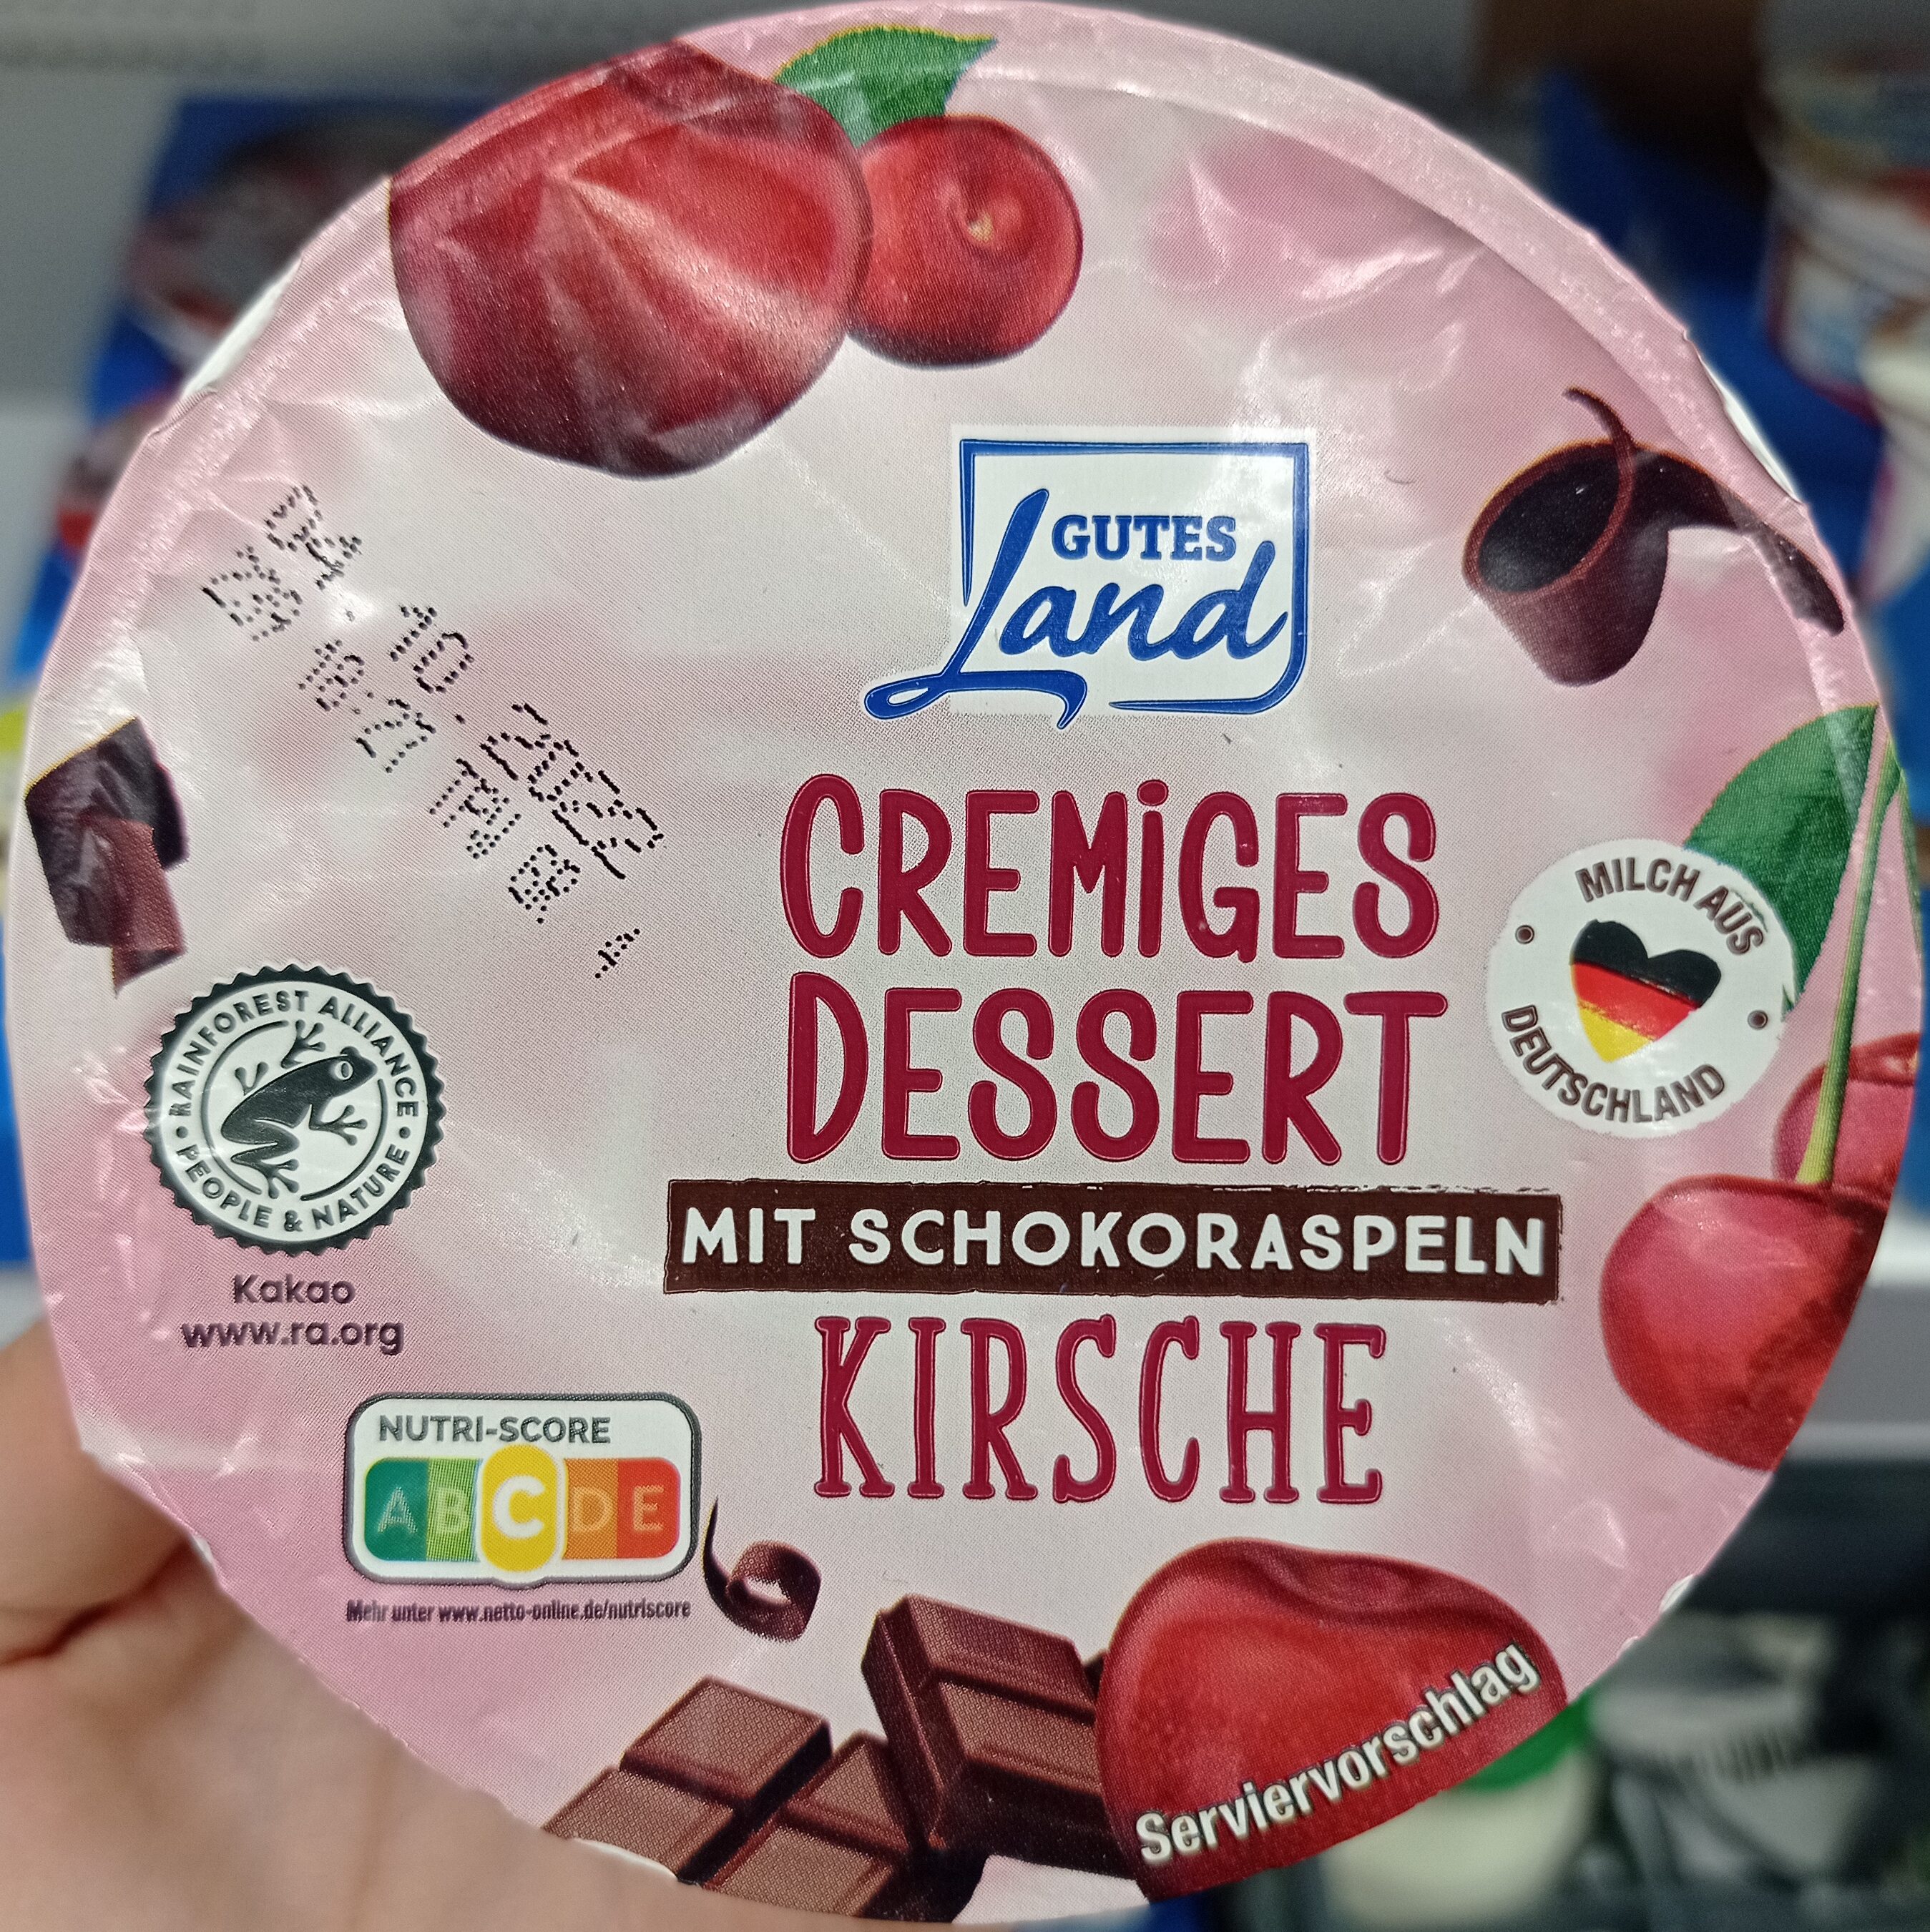 Cremiges dessert mit Schororaspeln Kirsche - Product - de